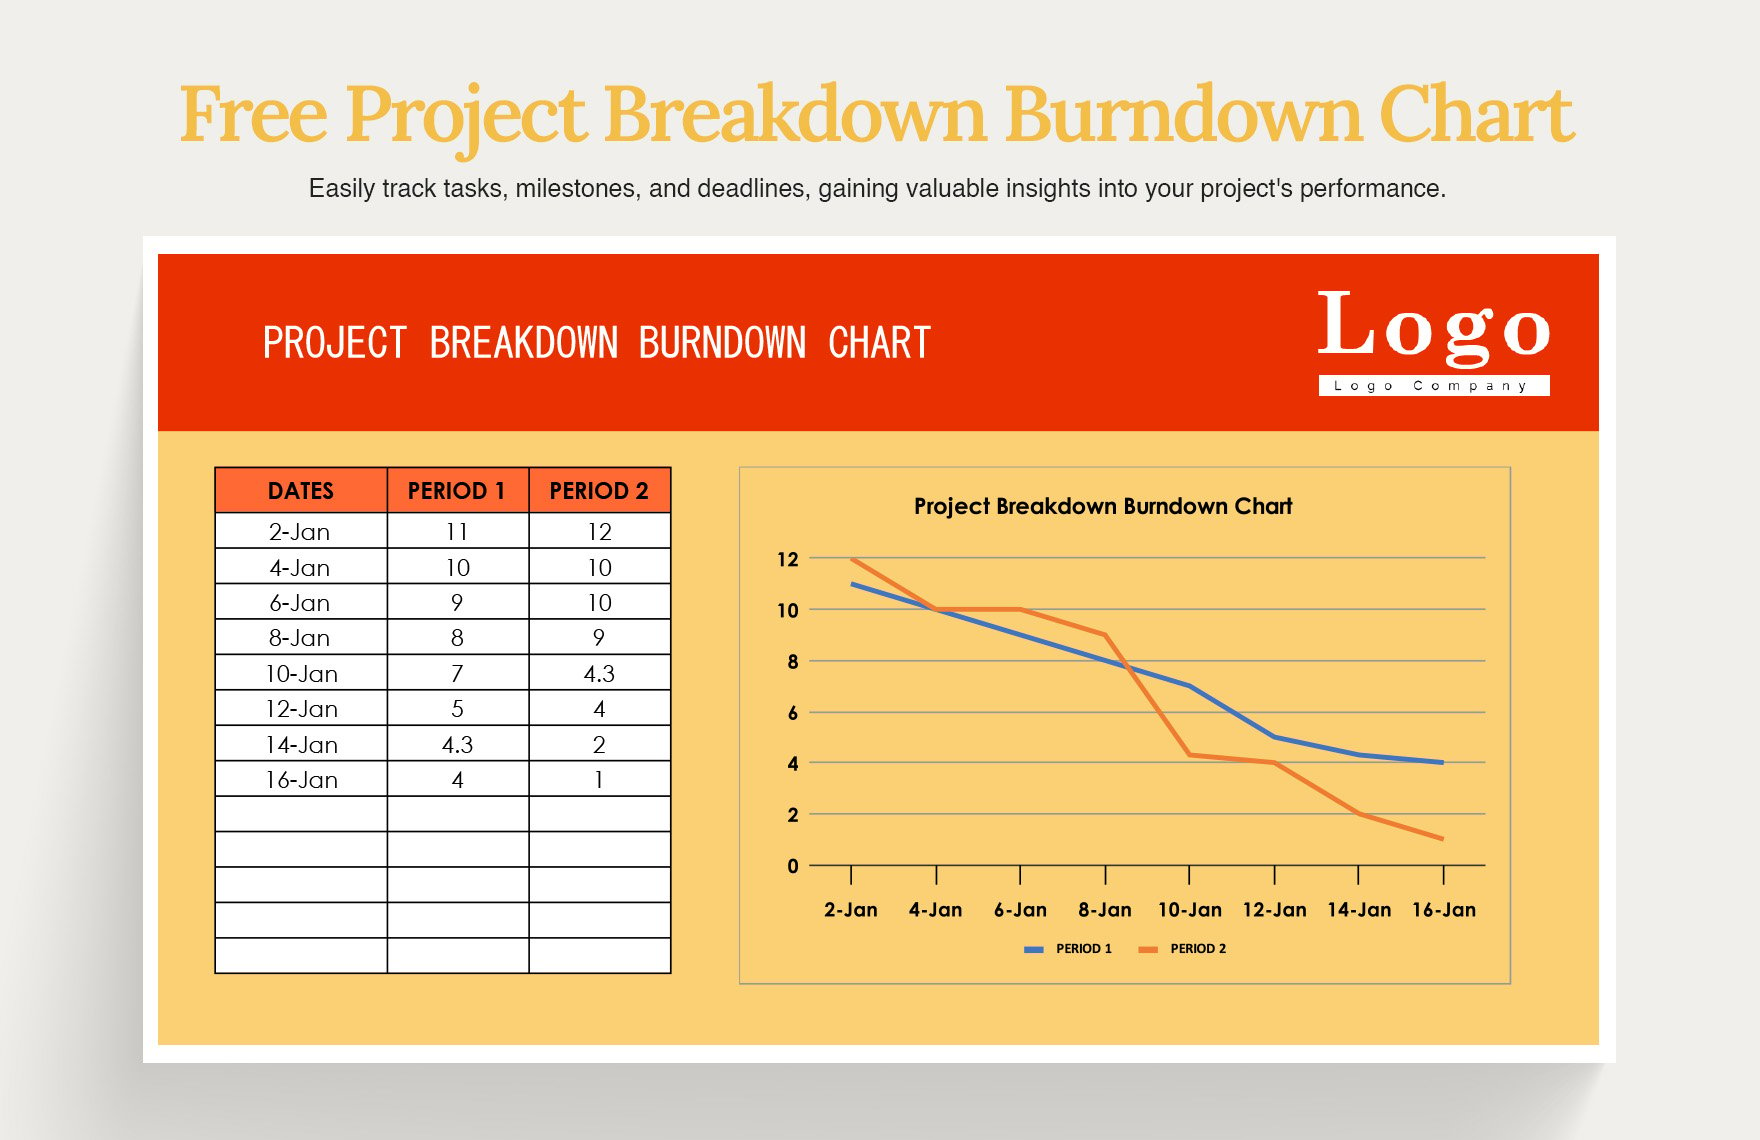 Project Breakdown Burndown Chart